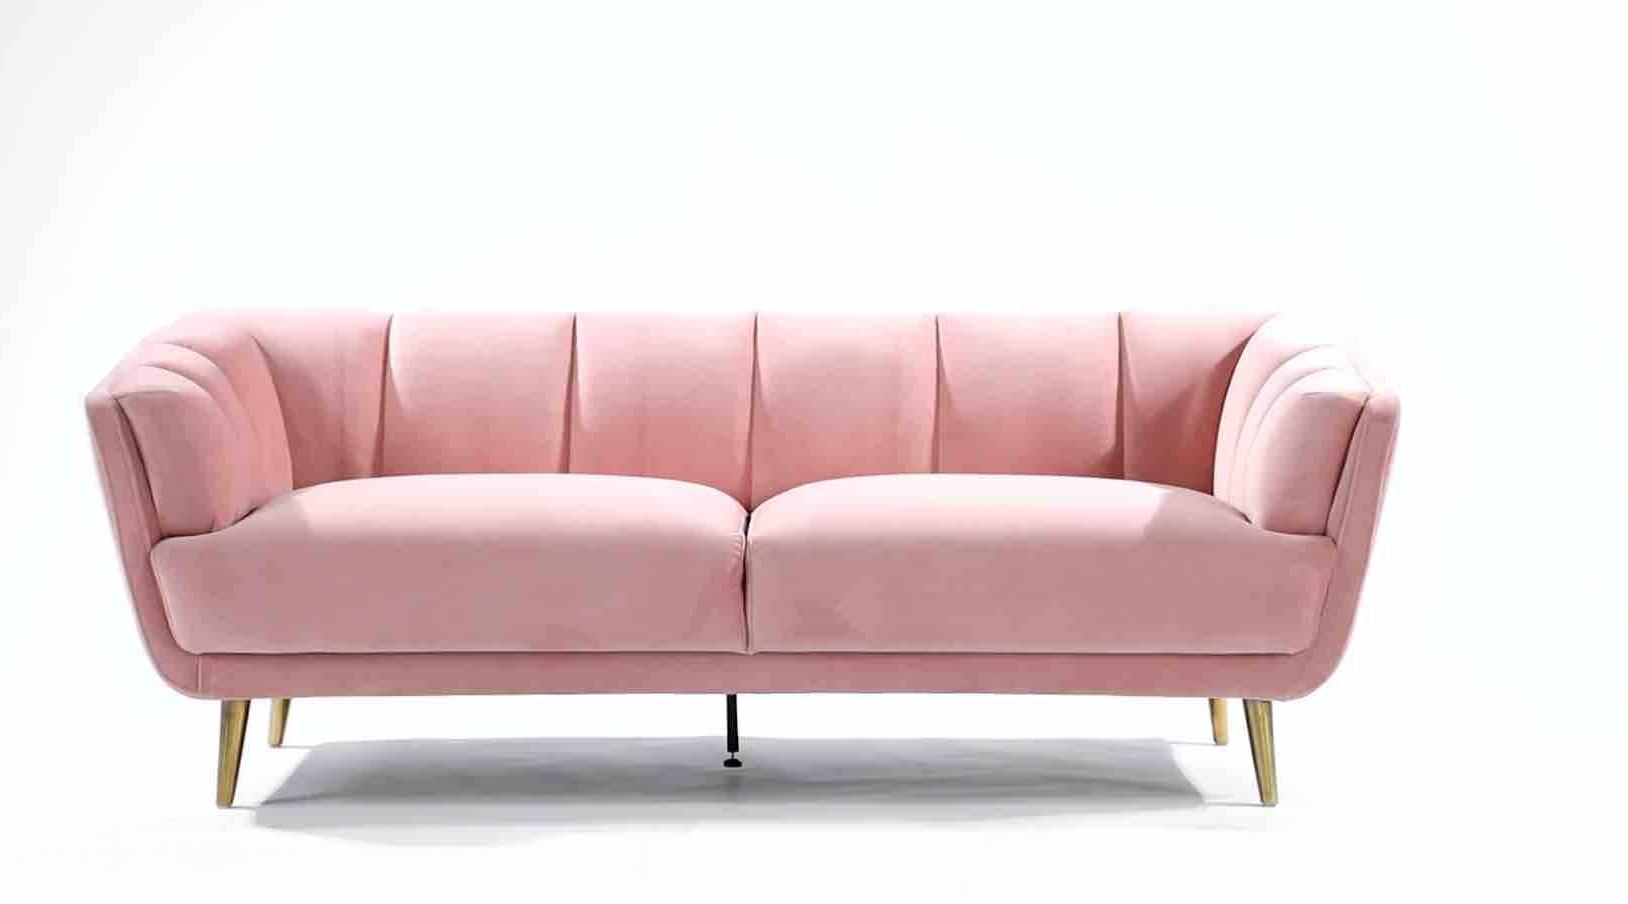 白底粉红色沙发